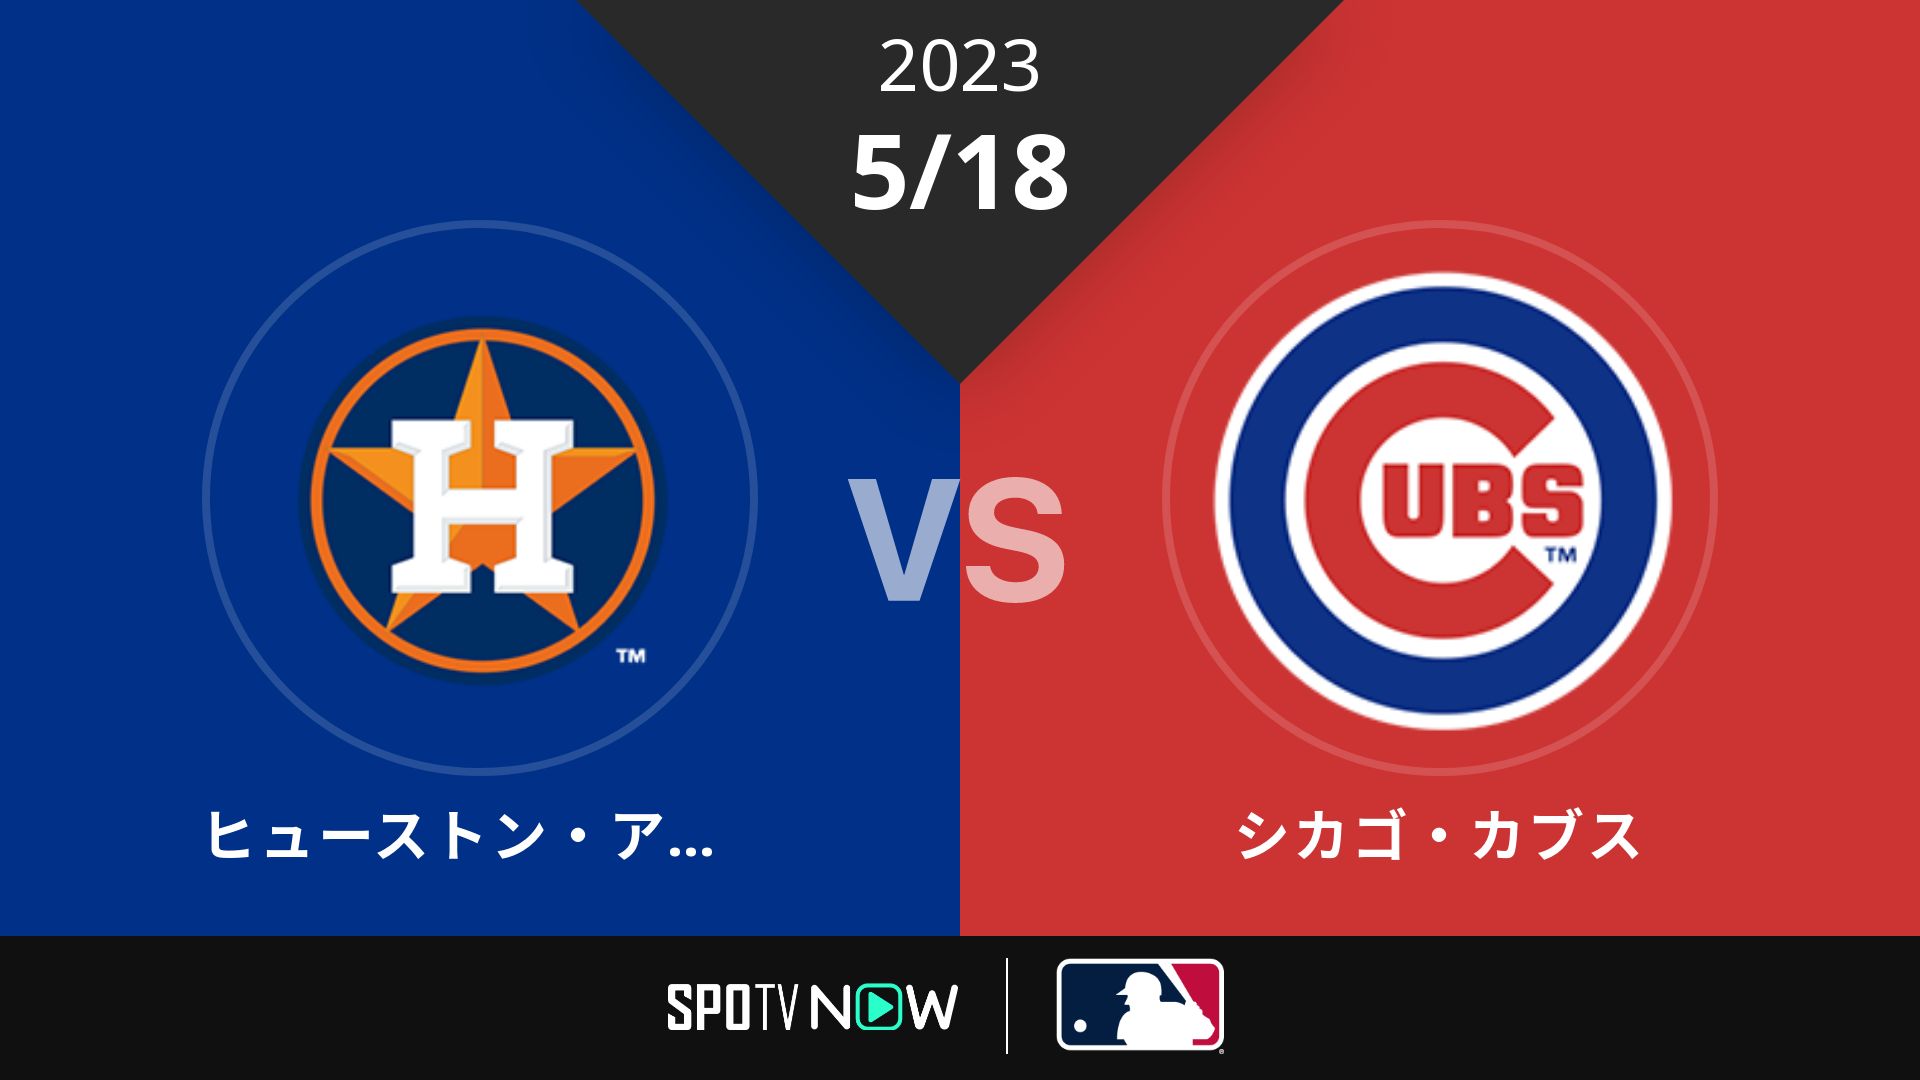 2023/5/18 アストロズ vs カブス [MLB]